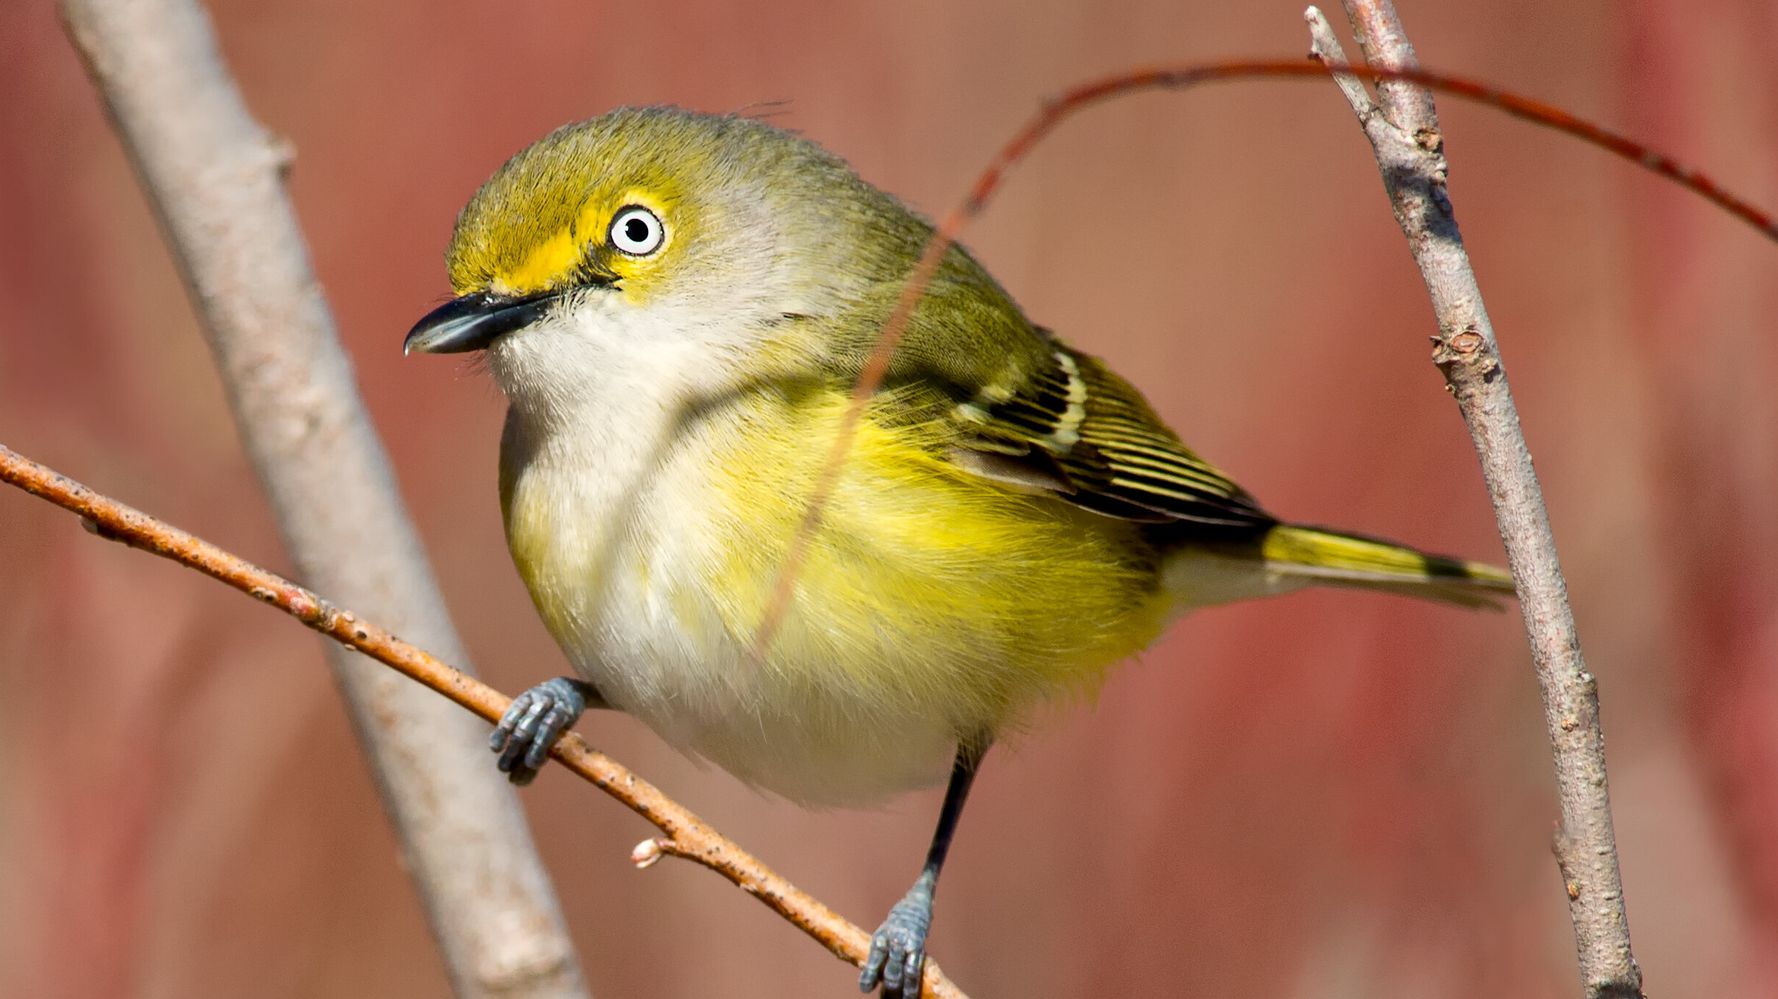 鳴く鳥はオスだけ いえ メスもです 女性研究者の参入で崩れた 通説 研究結果に驚きの声 ハフポスト